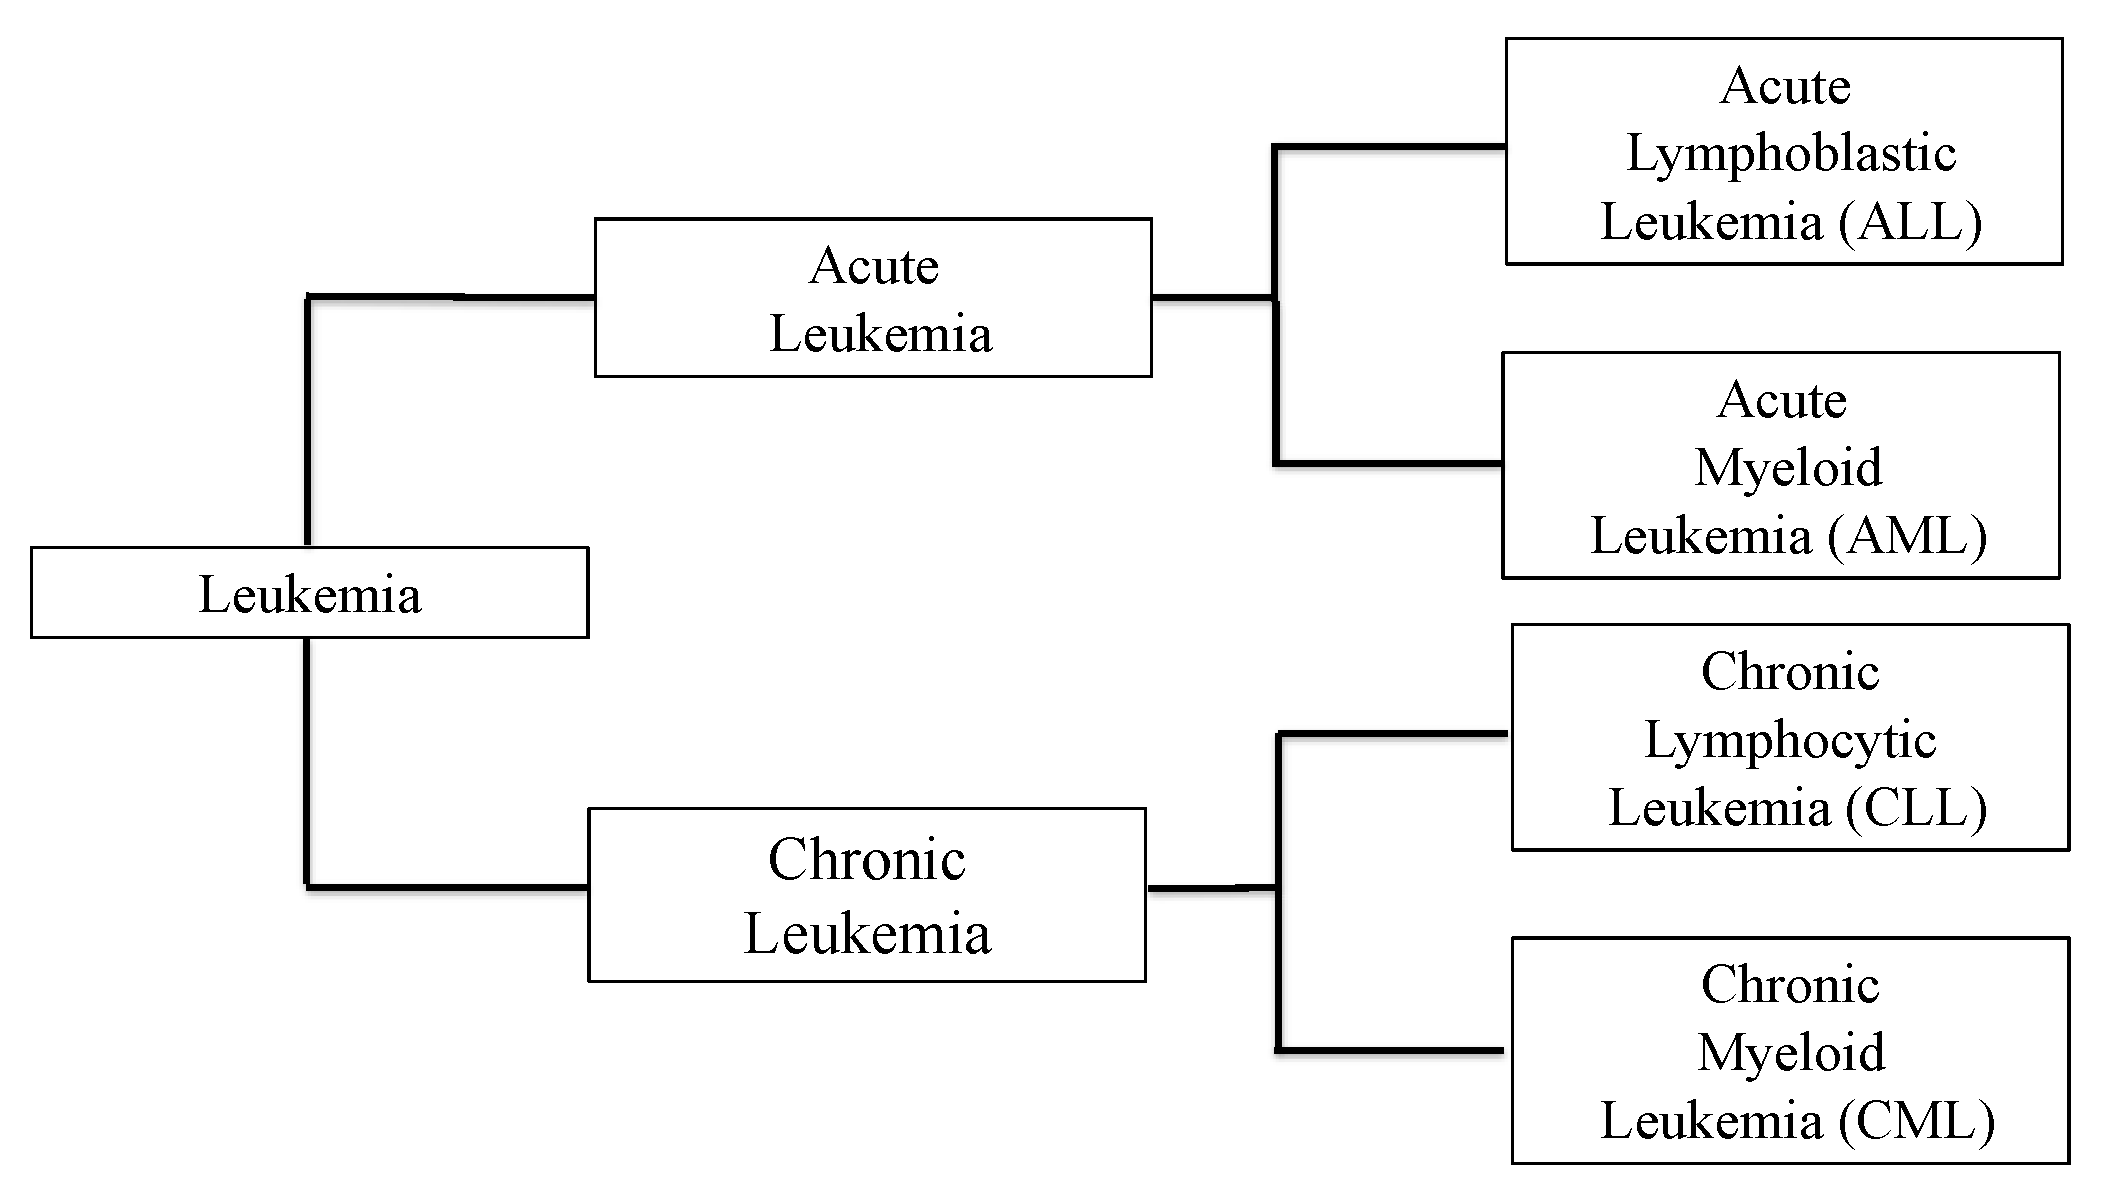 chronic leukemia vs acute leukemia